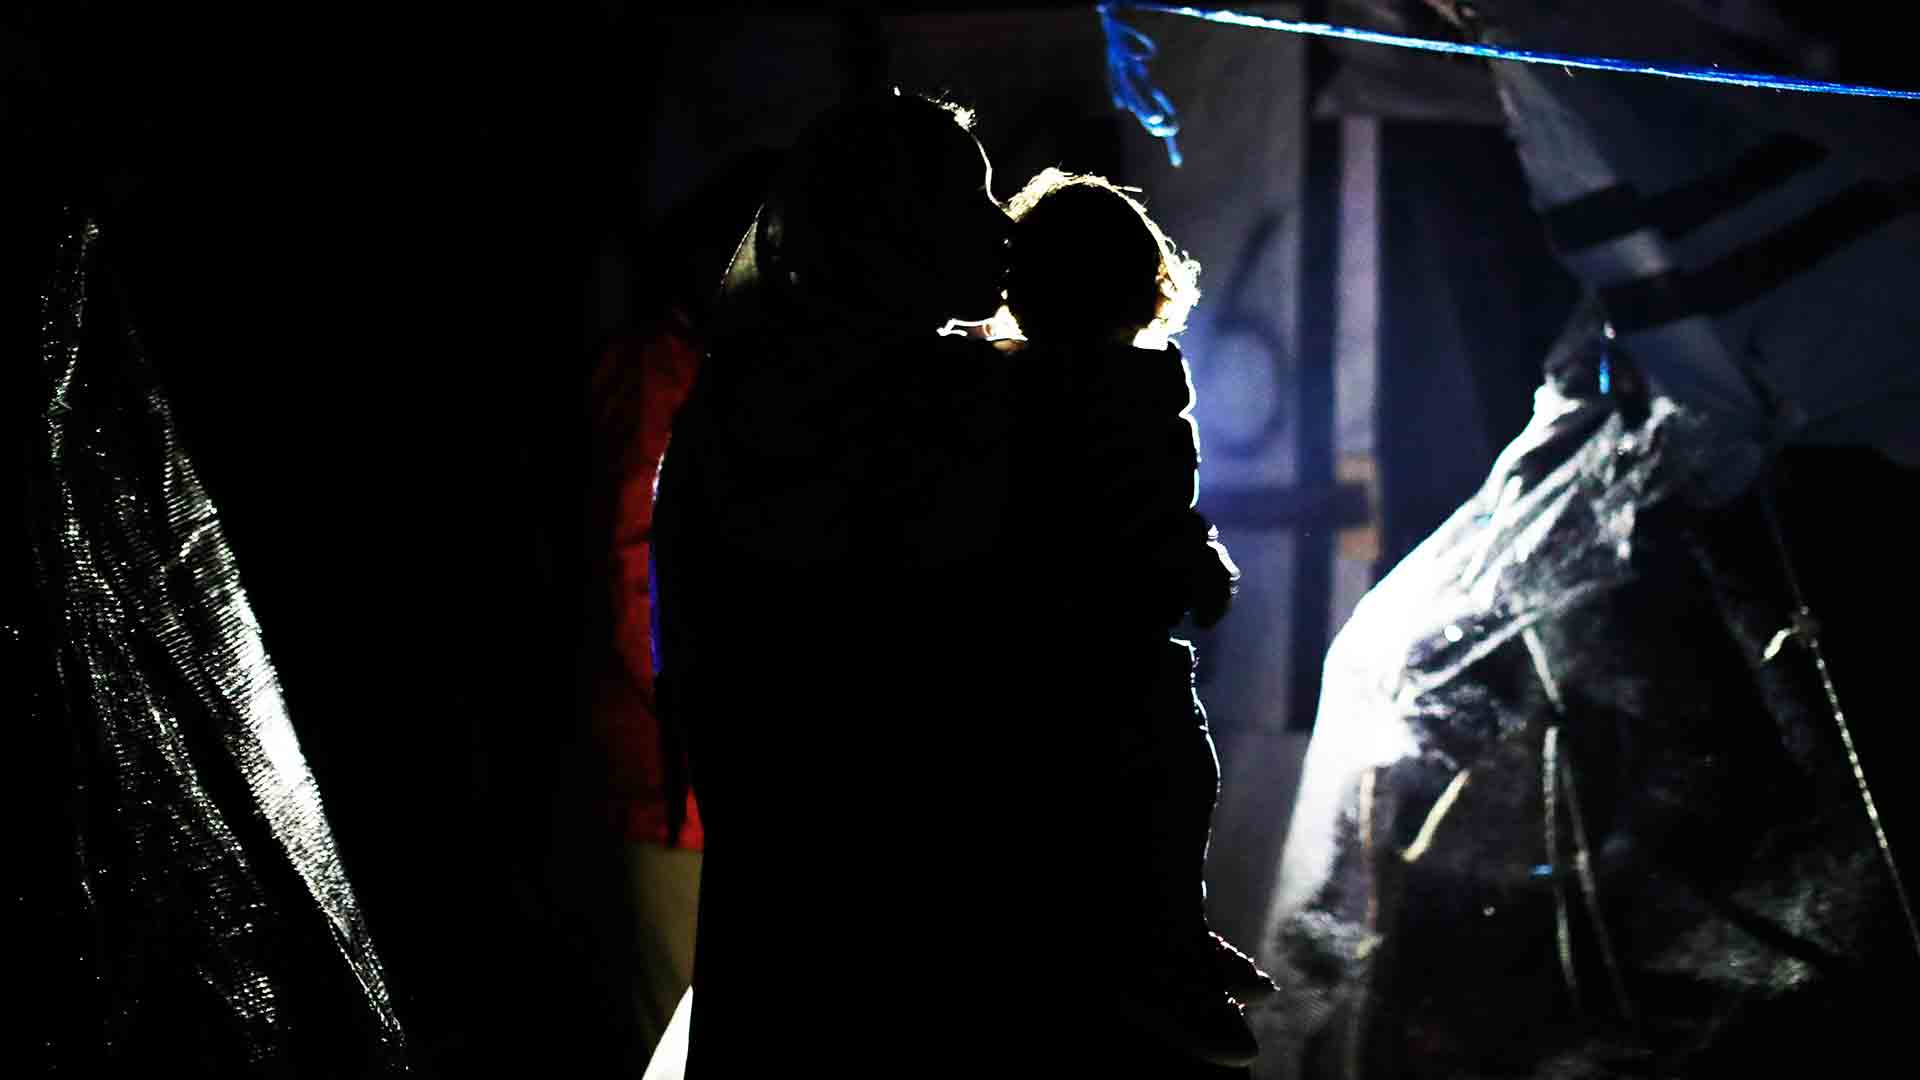 Refugiadas embarazadas, menores y torturados: vulnerables y abandonados en Lesbos